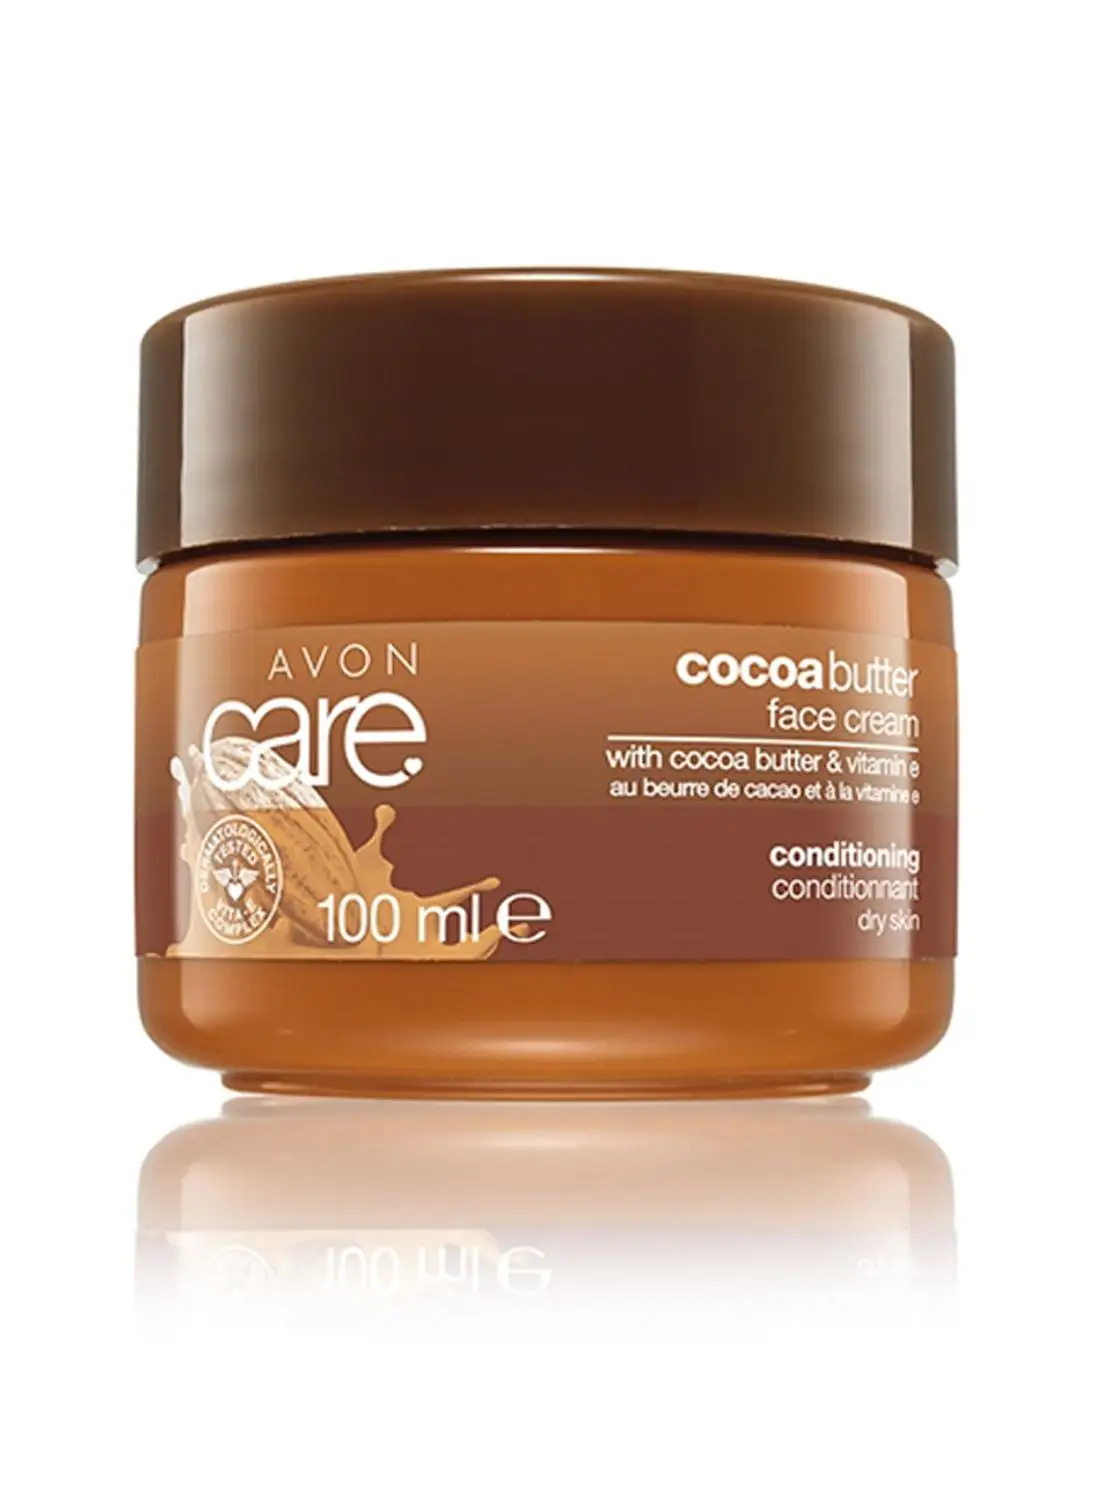 

Крем для лица Avon с какао витамином Е, 100 мл. Уход, ремонт, увлажнение, питание, удлинение волос